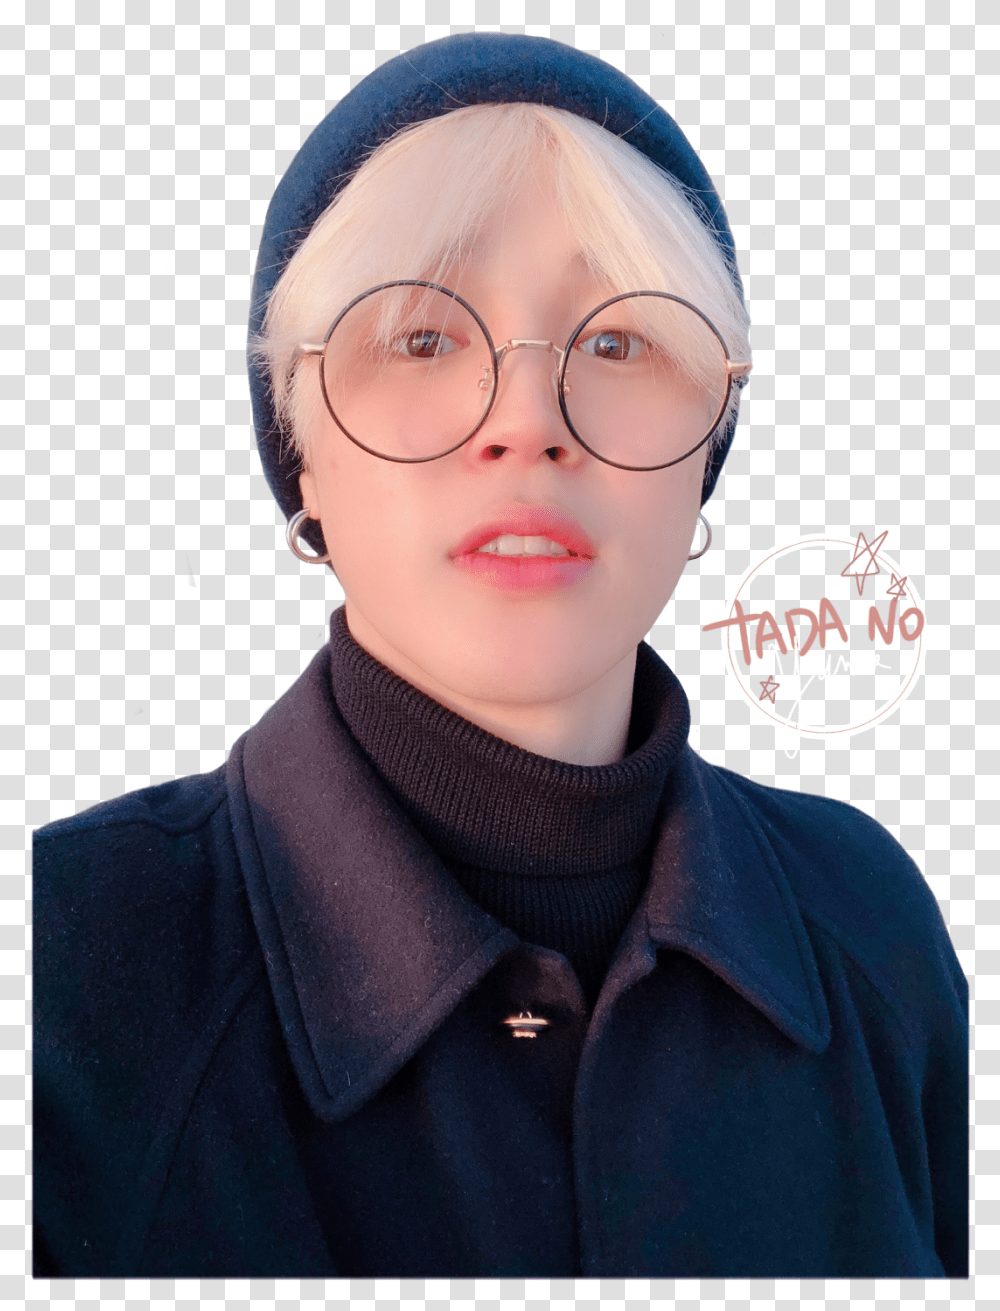 Bts Jimin Selca Twitter Park Chichim Cute Bts Twt Update 2019, Person, Face, Glasses Transparent Png